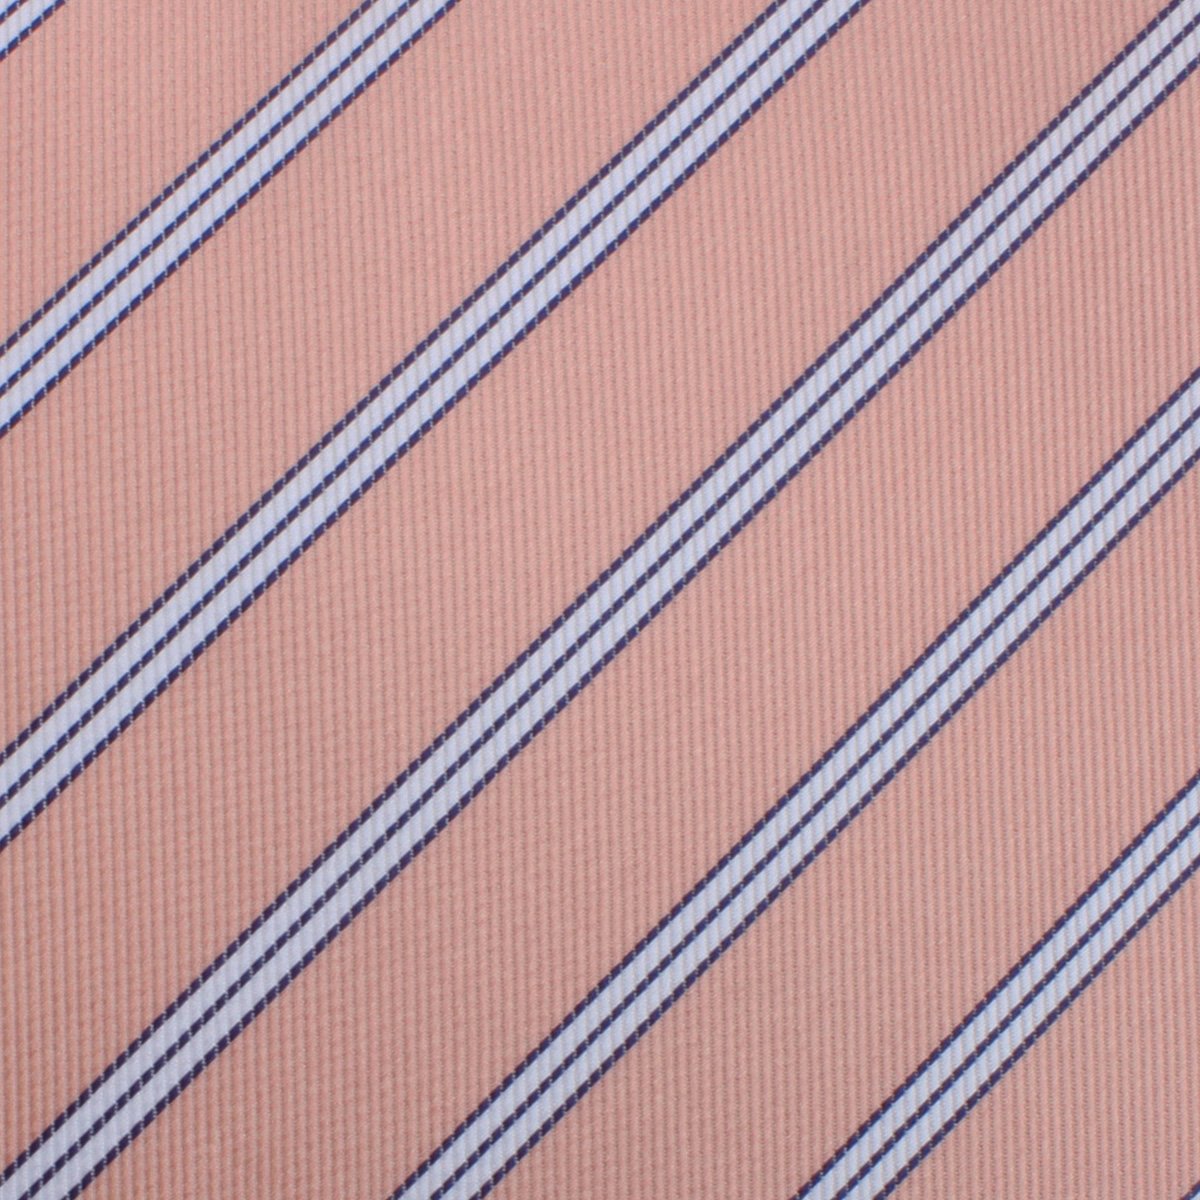 Dusty Peach Copacabana Striped Skinny Tie Fabric